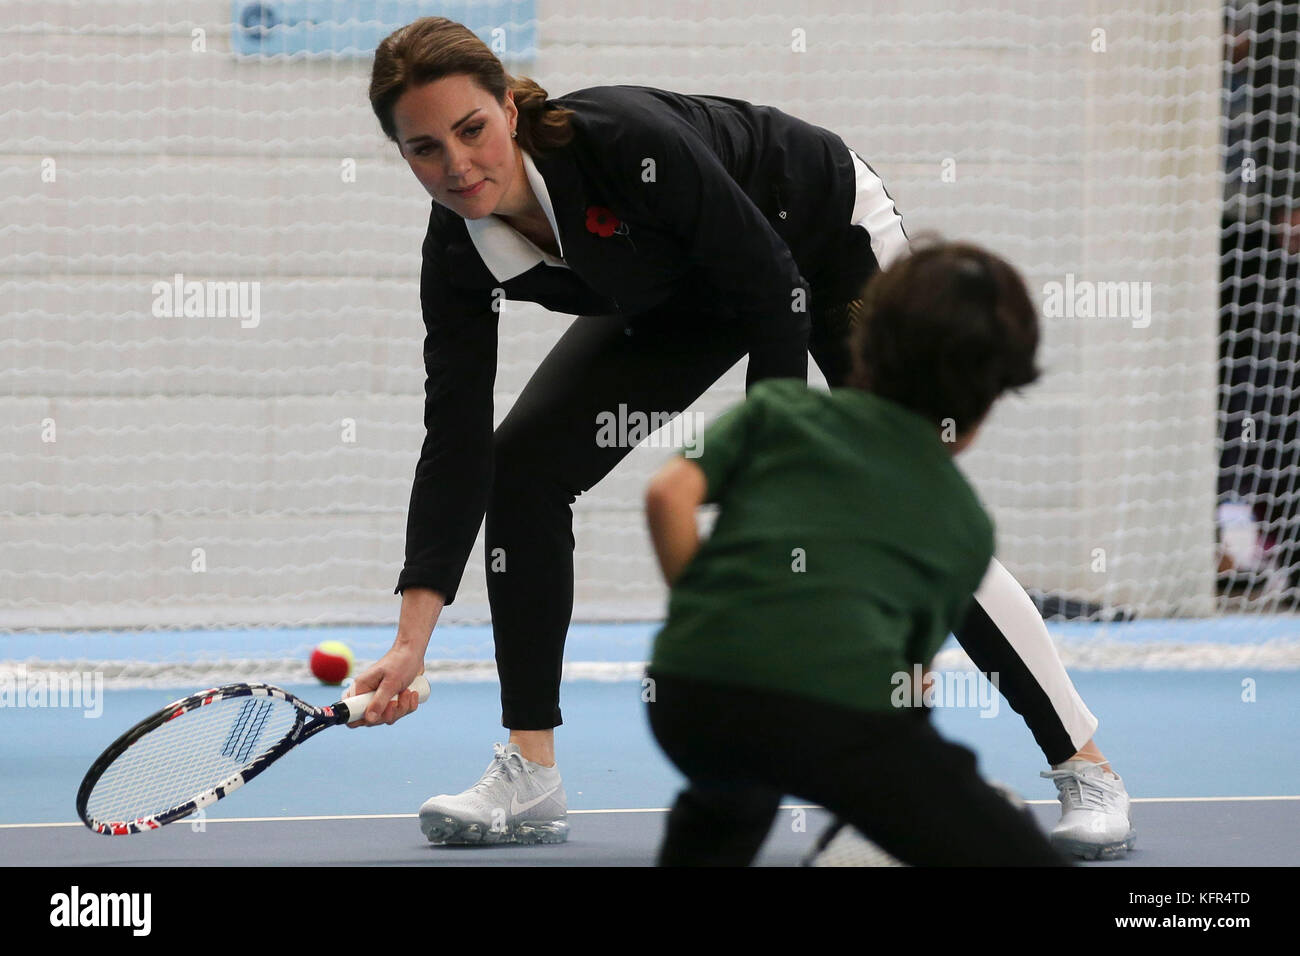 La duchesse de Cambridge prend part à une séance de tennis pour les enfants lors d'une visite à la lawn tennis association (LTA) à la National Tennis Center dans le sud-ouest de Londres. Banque D'Images